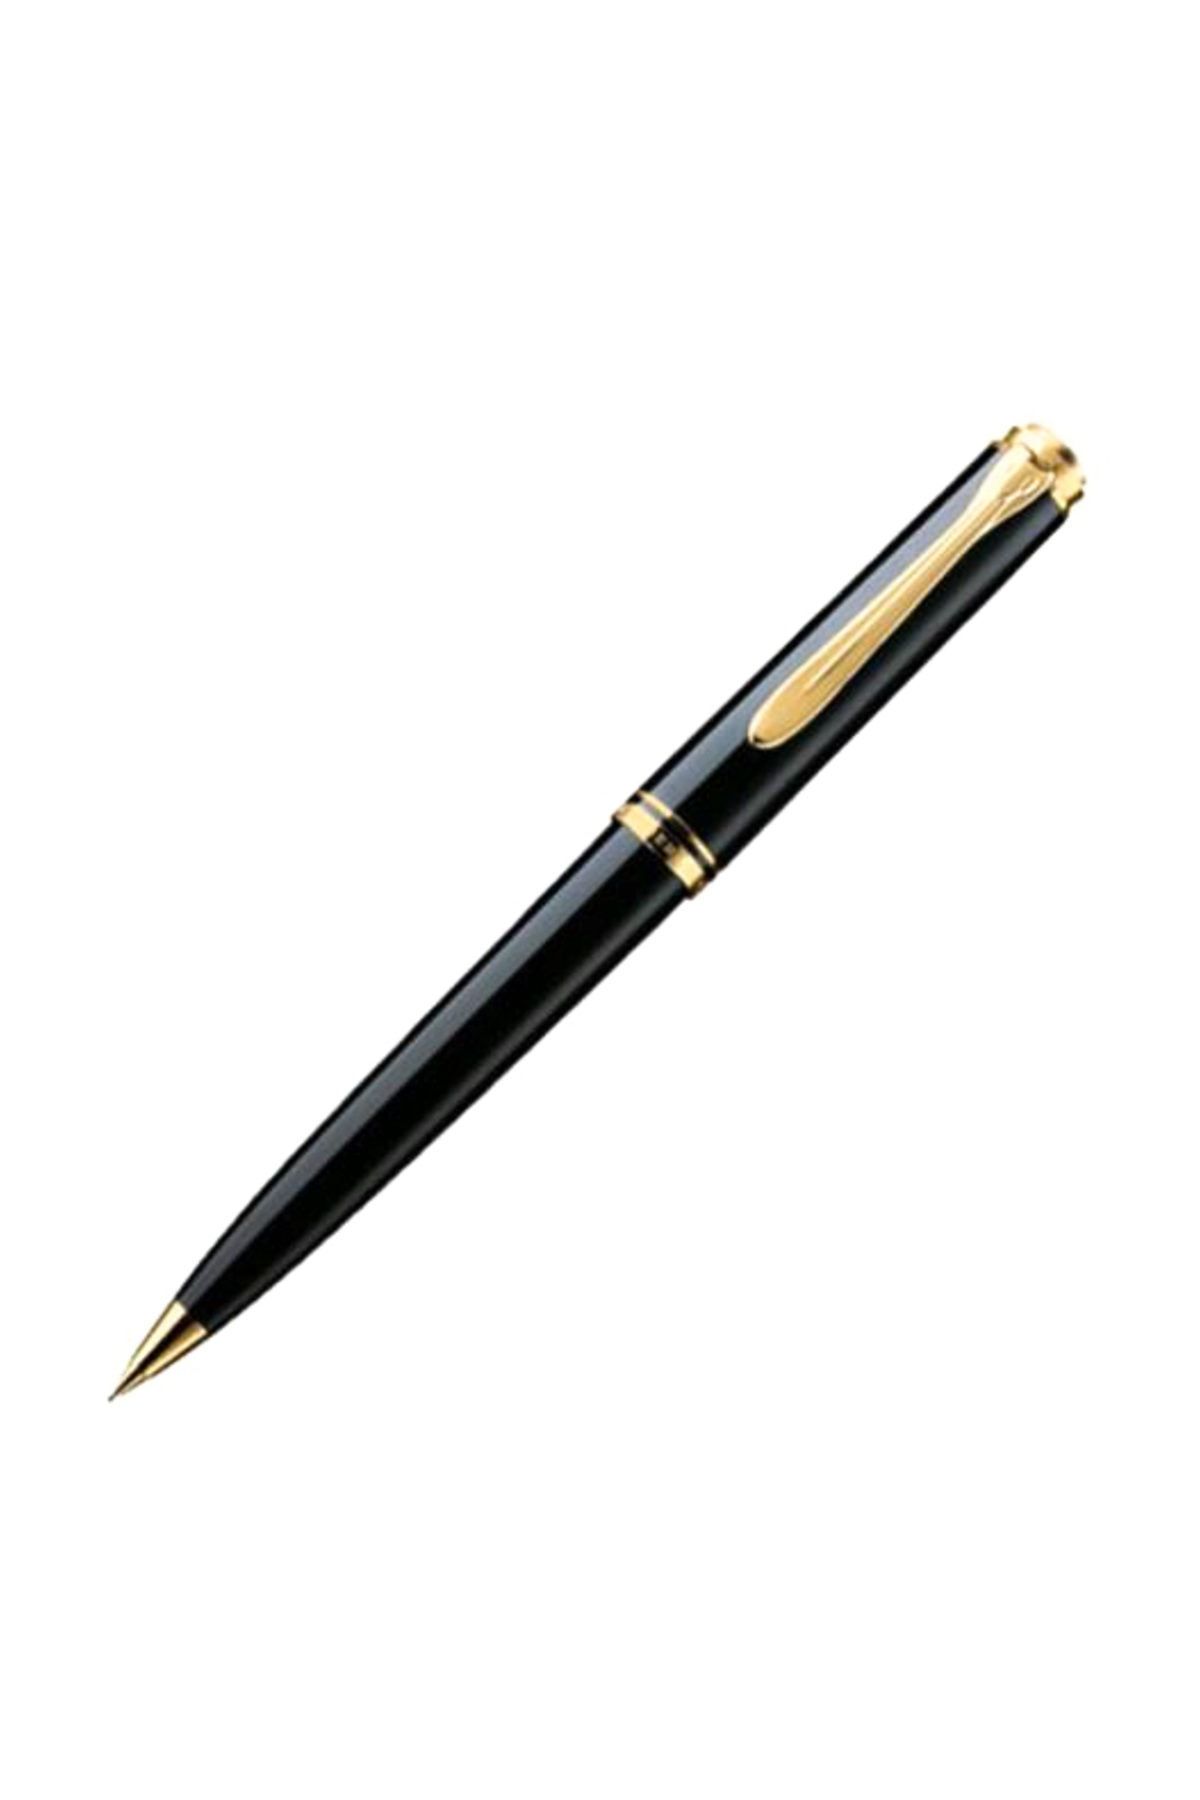 Pelikan D600S Versatil Kalem 14 Ayar Altın Kaplama Siyah Pel-D600S